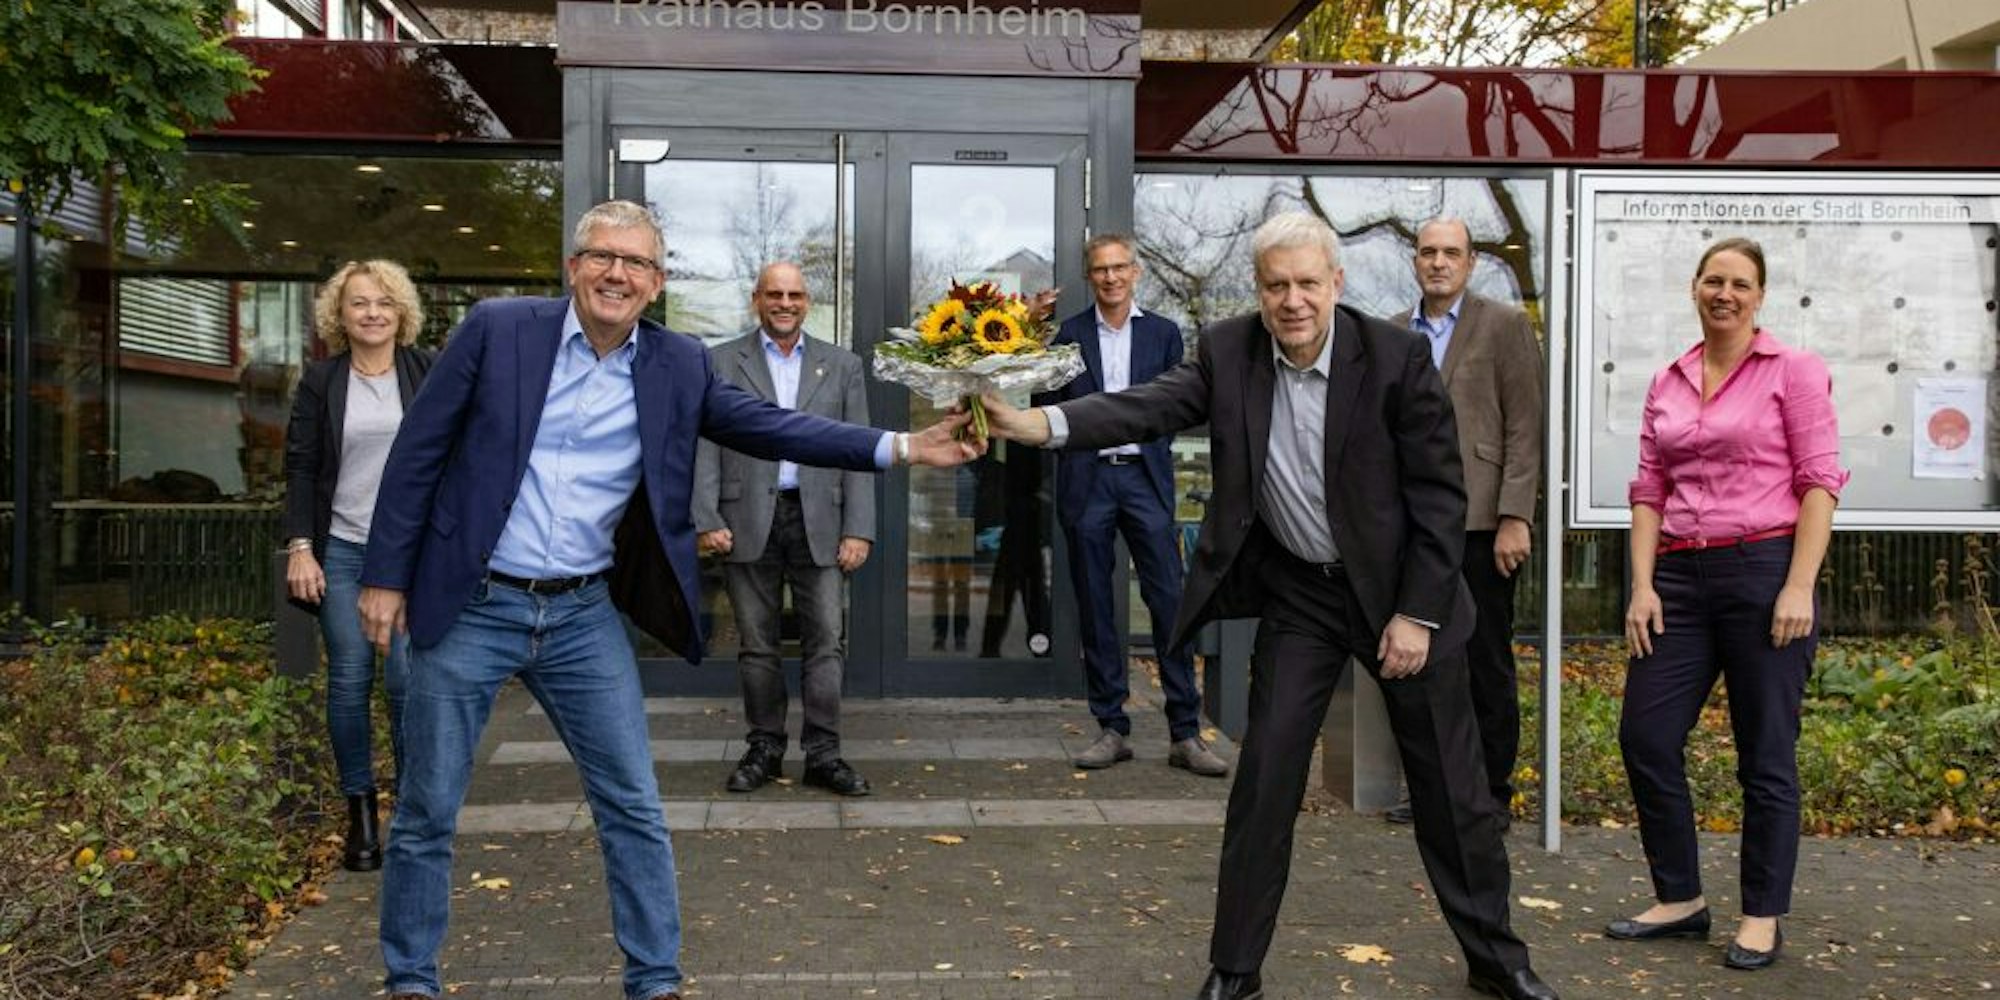 Sonnenblumen übergab Beigeordneter Manfred Schier dem neuen Bornheimer Bürgermeister Christoph Becker 